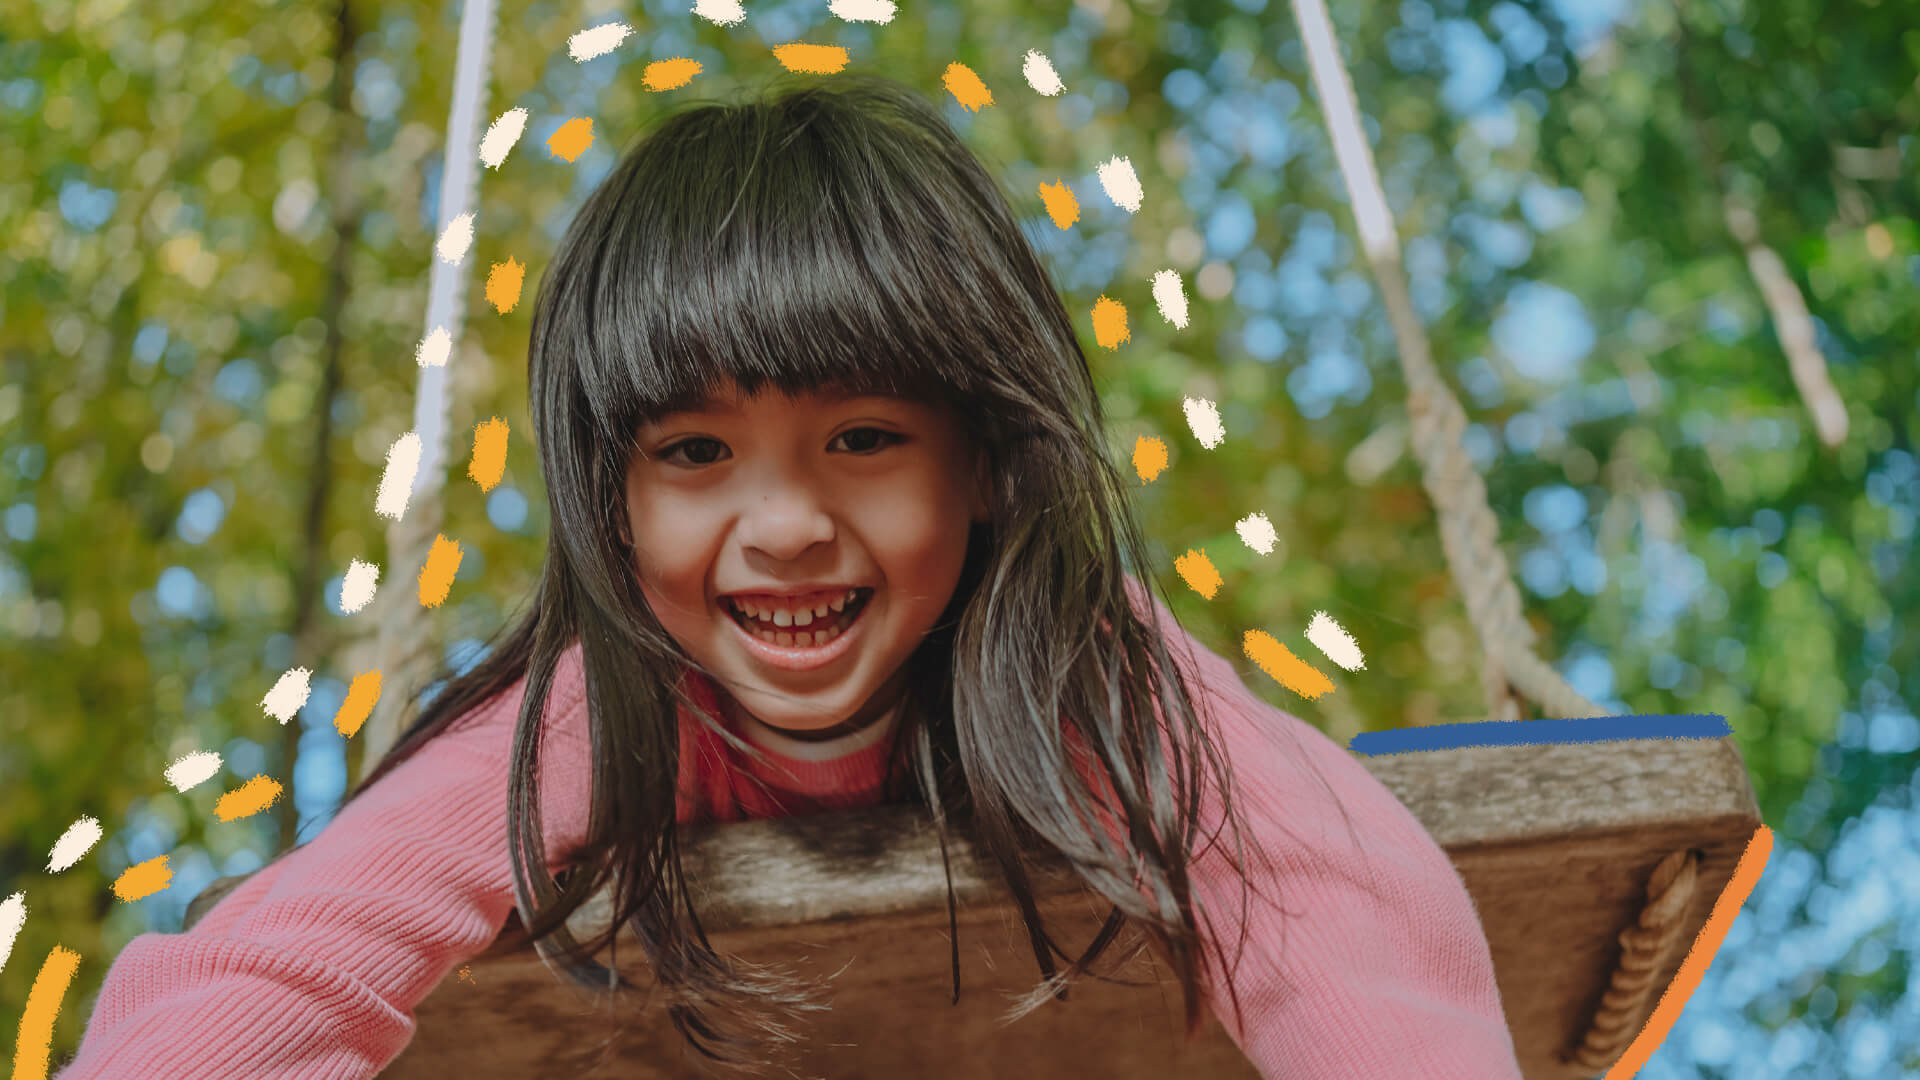 Na foto, uma menina de pele clara e cabelos escuros sorri enquanto brinca em um balanço.